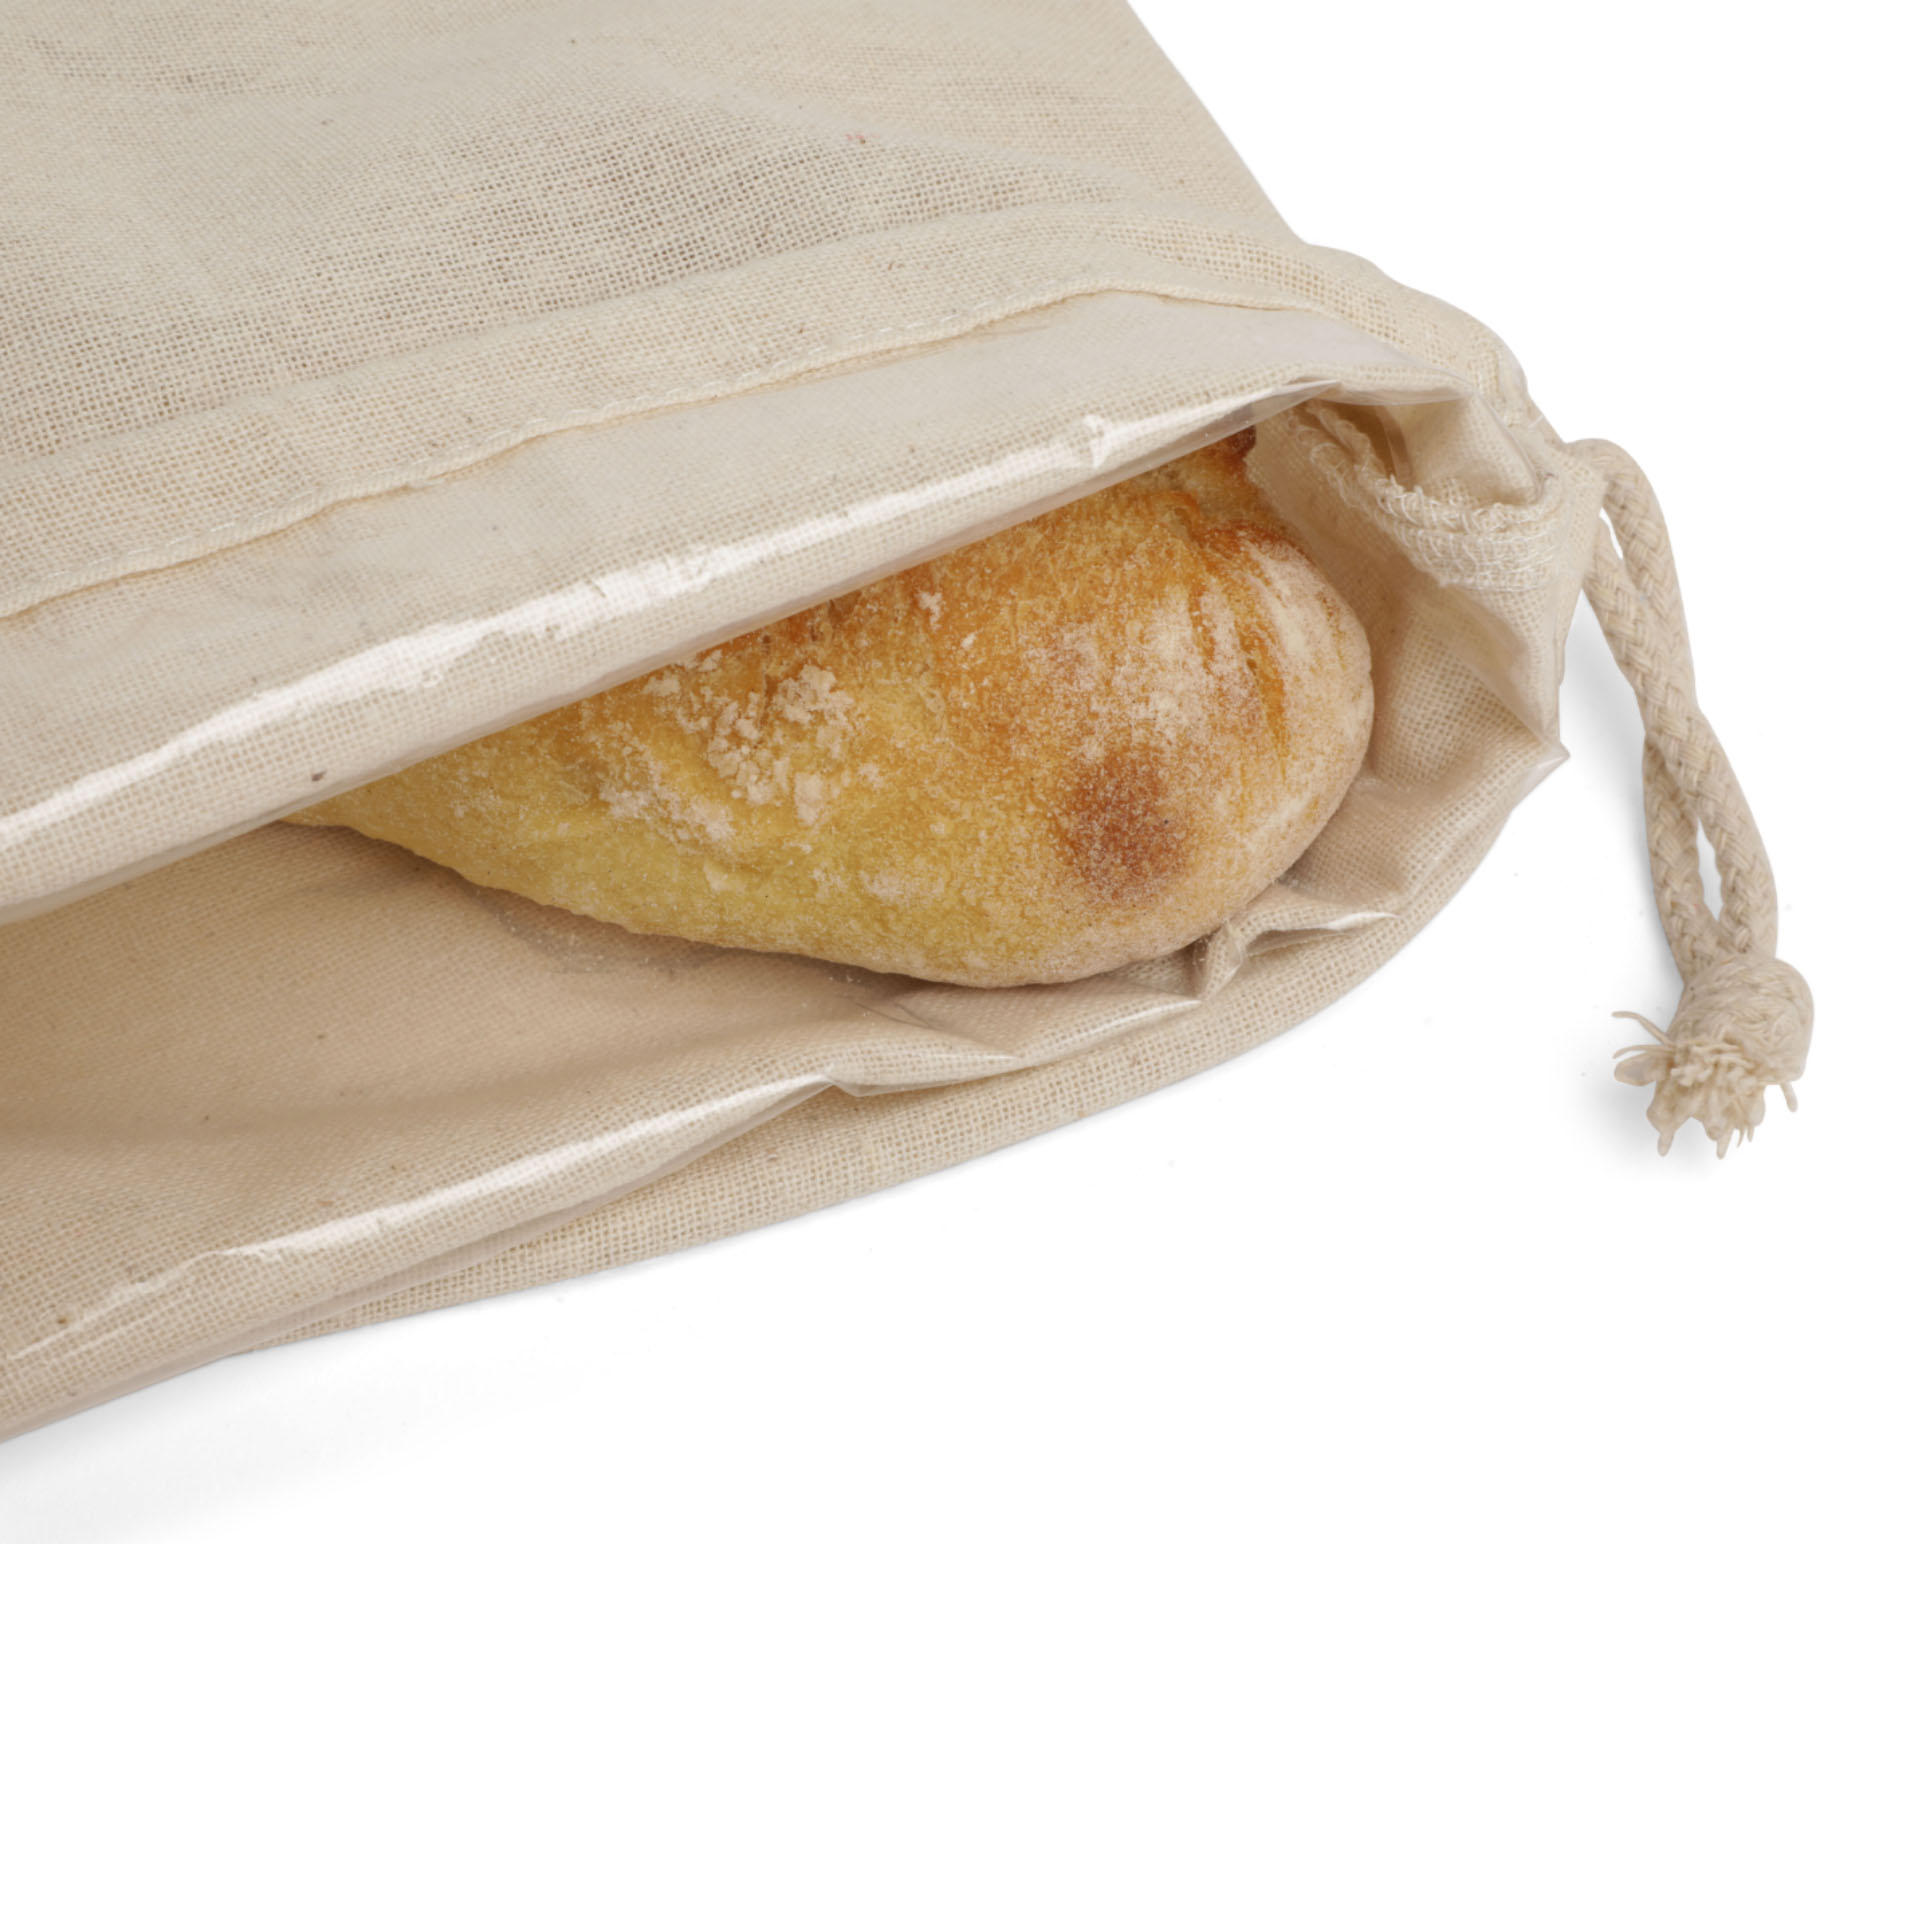 Sacchetto antibatterico per il pane, , large